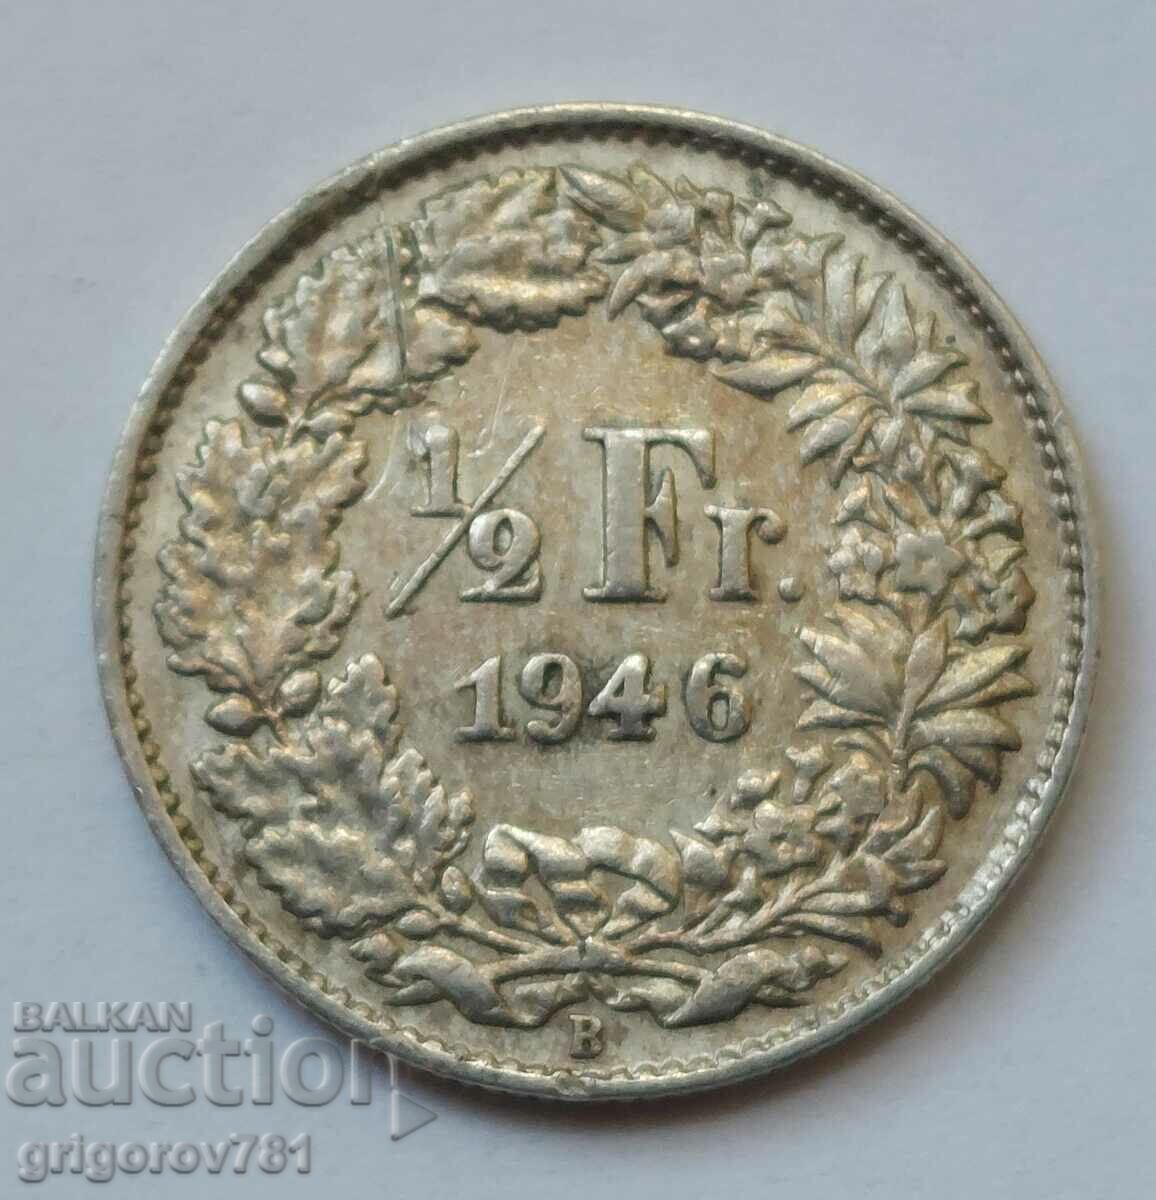 Ασημένιο φράγκο 1/2 Ελβετία 1946 Β - Ασημένιο νόμισμα #187